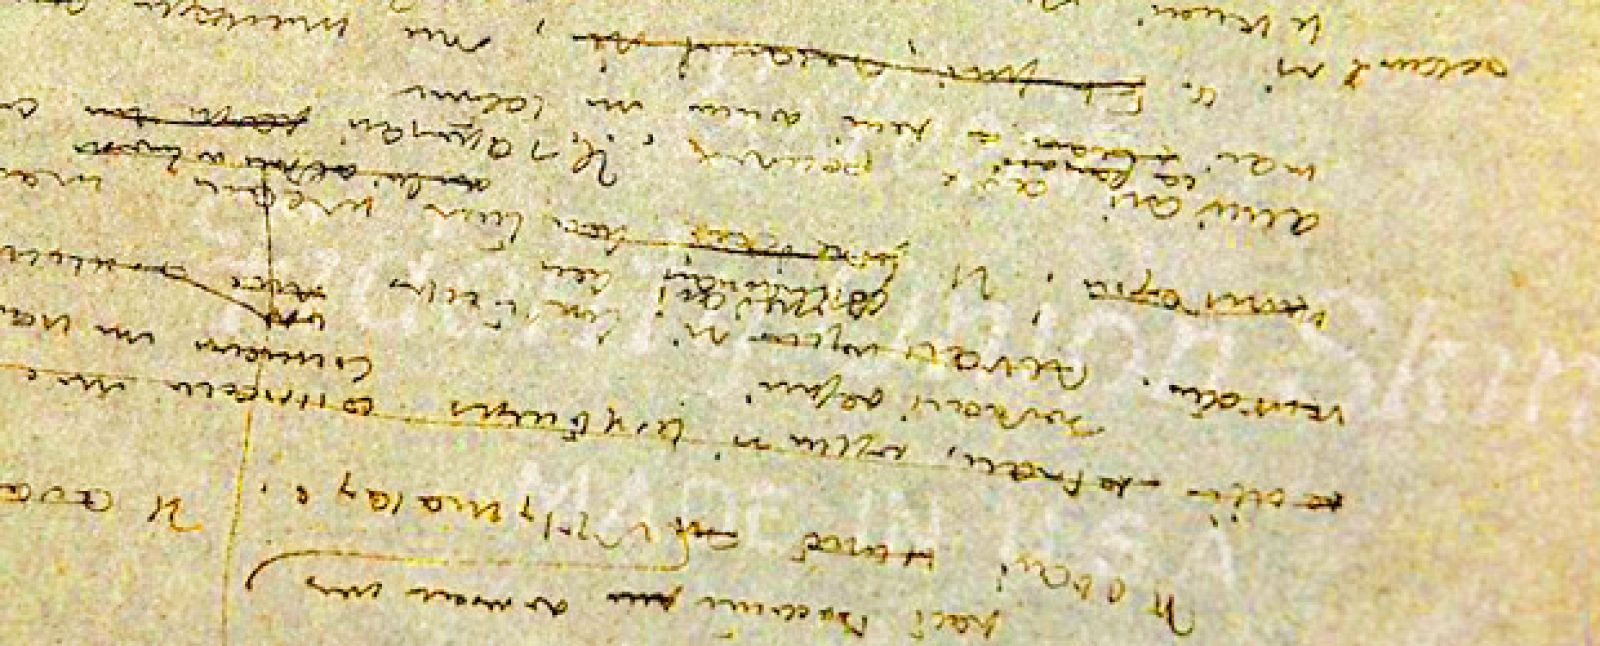 Fragmento de las dos hojas en las que Sàint-Exupery escribió sobre "el crucigramista"